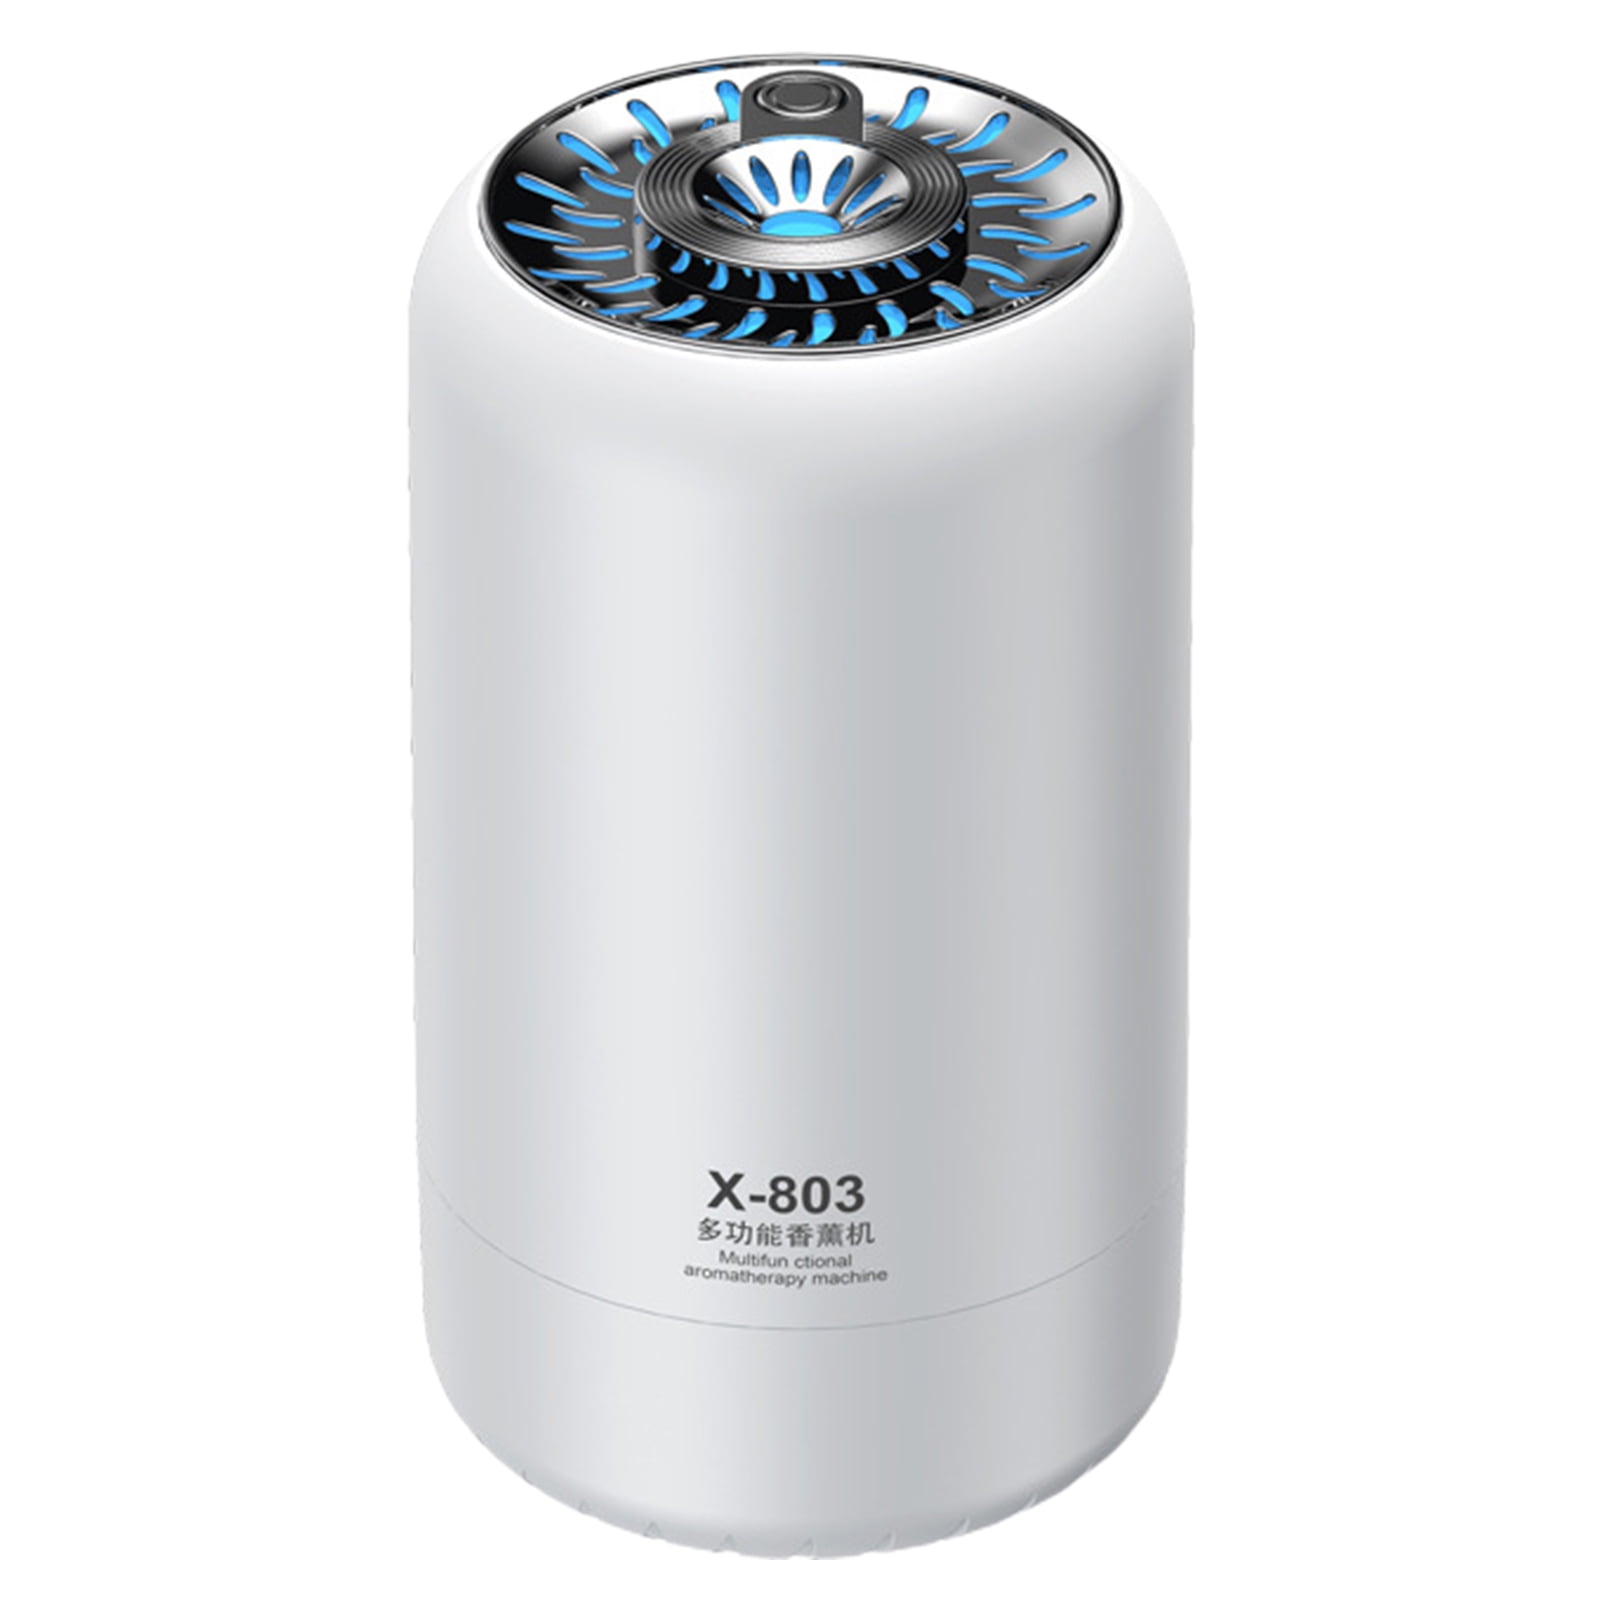 ARTI Air humidifier, Eocean Car Humidifier, 4 in 1 Car Aroma Essential Oil  Diffuser, Car Air